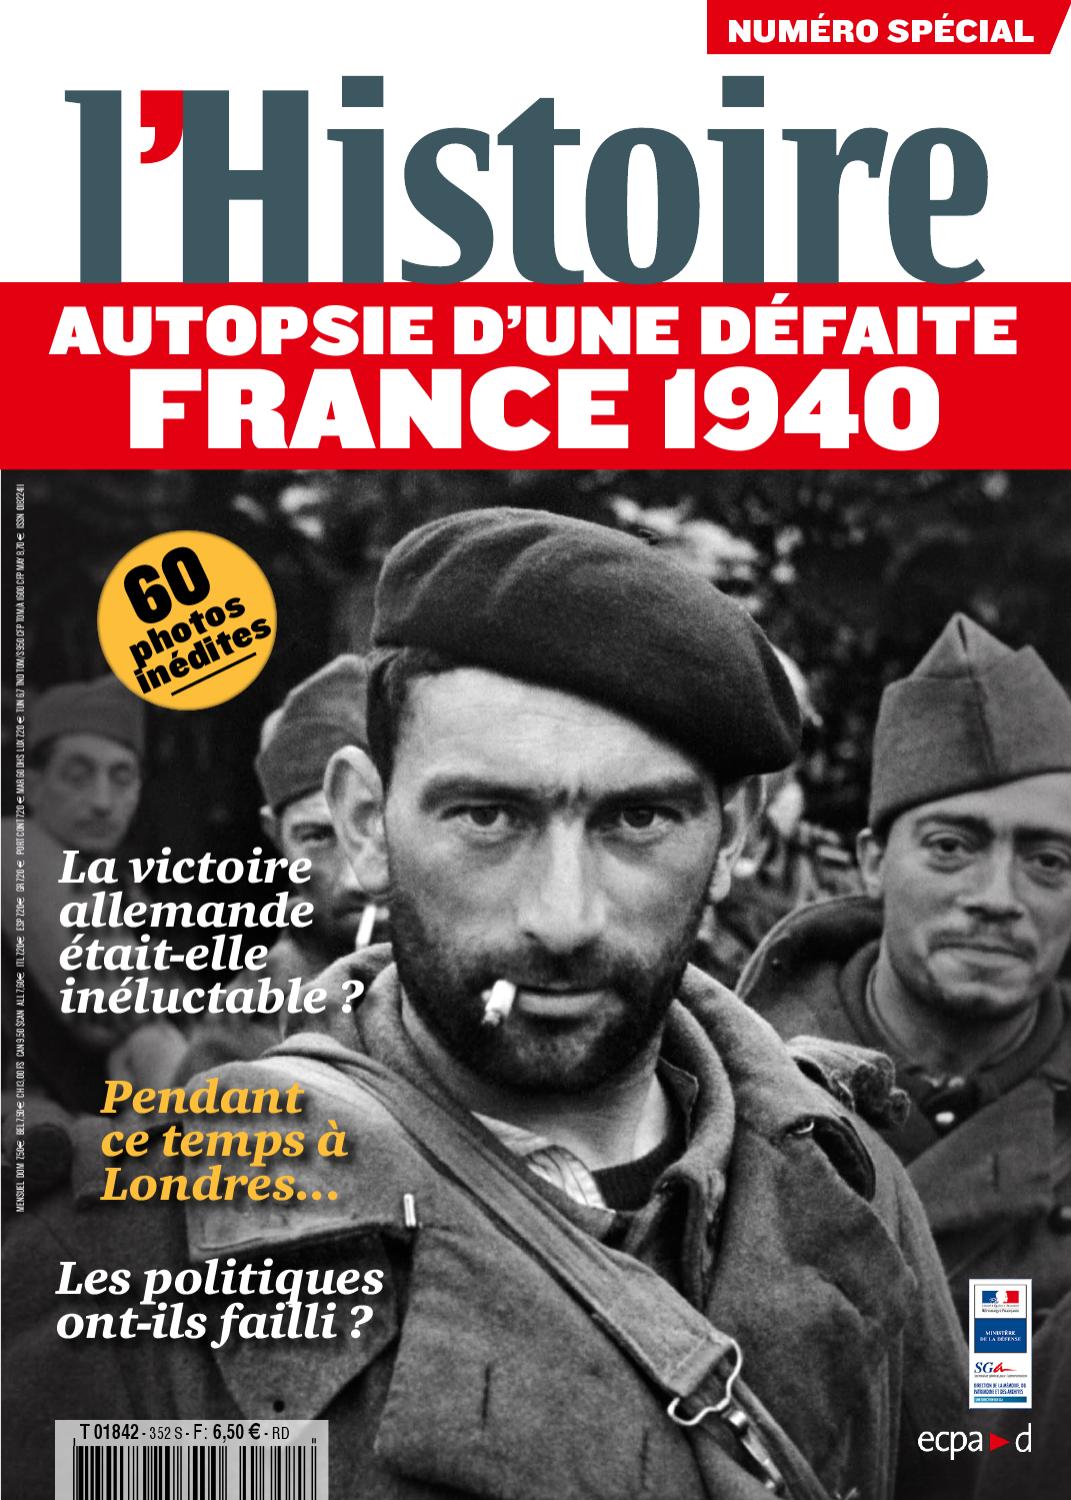 L'Histoire - Autopsie D'une Défaite France 1940 